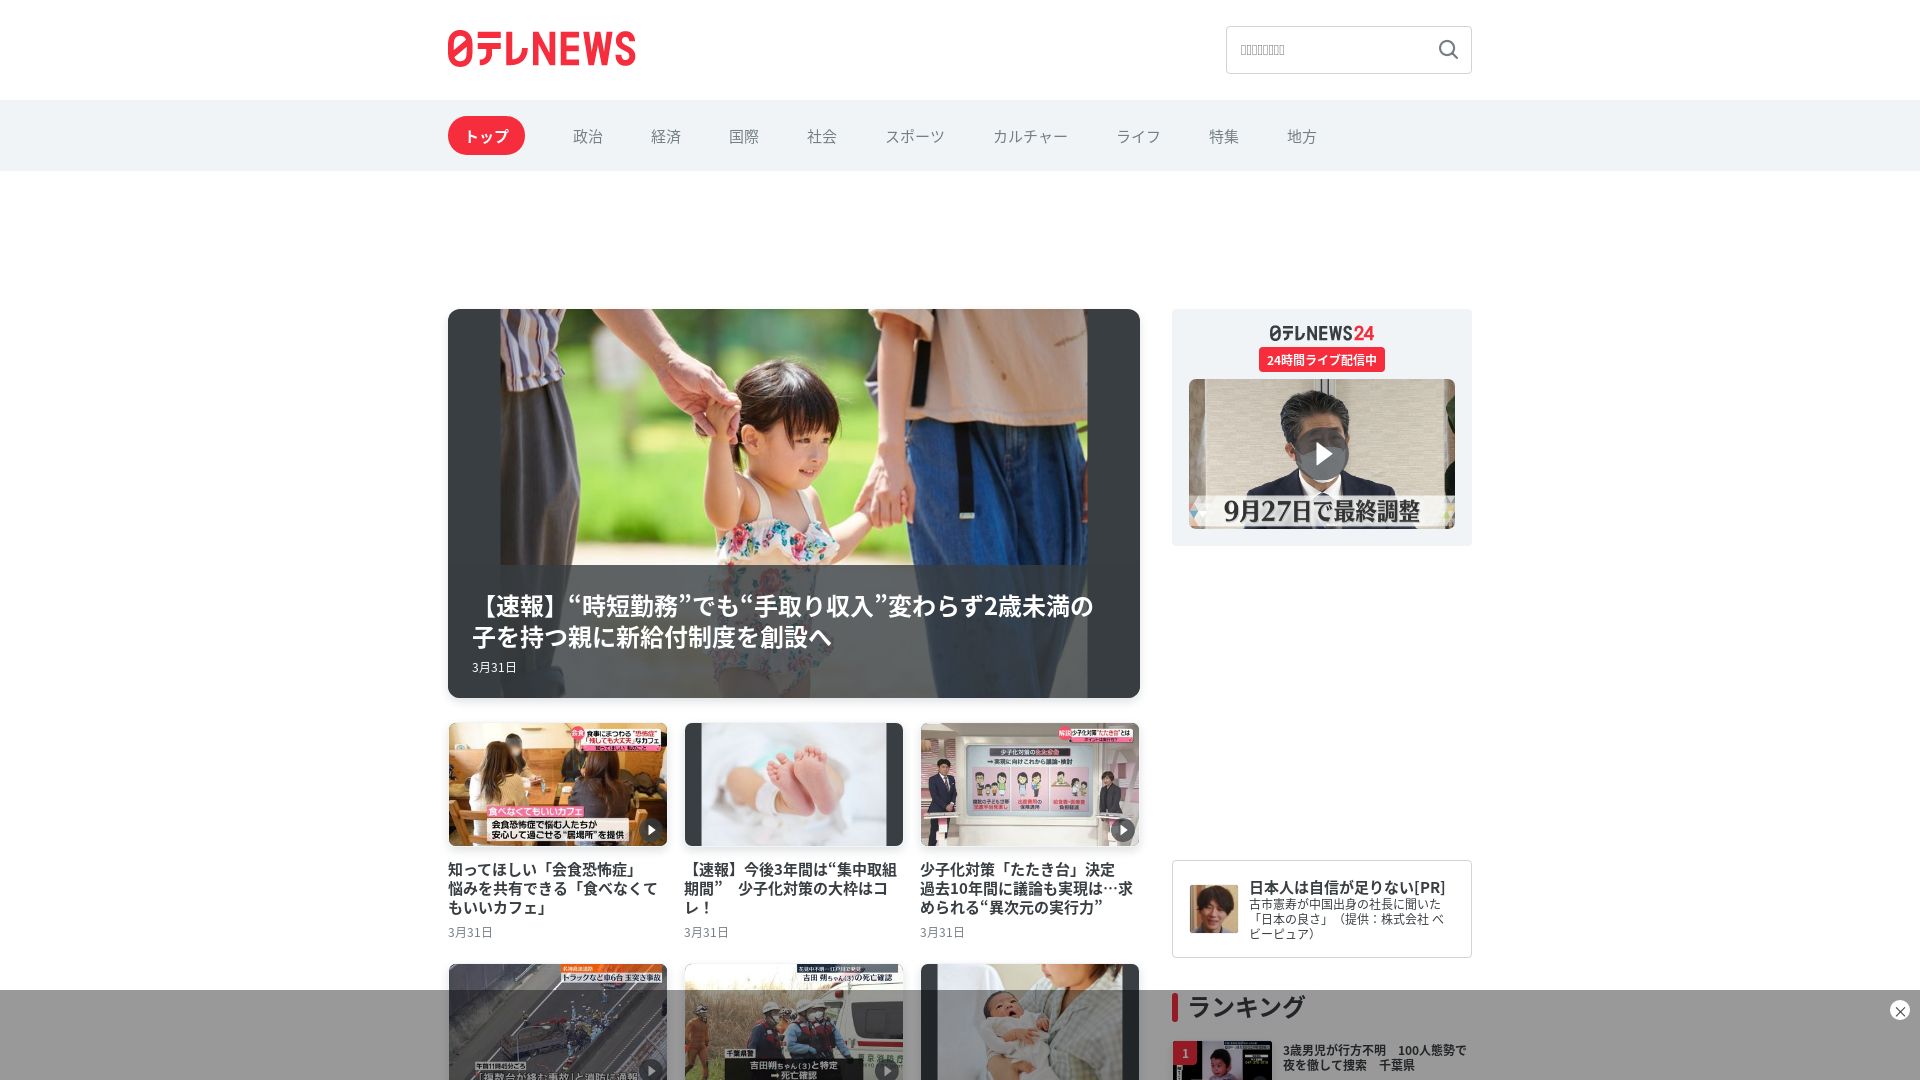 Stato del sito web news24.jp è   ONLINE